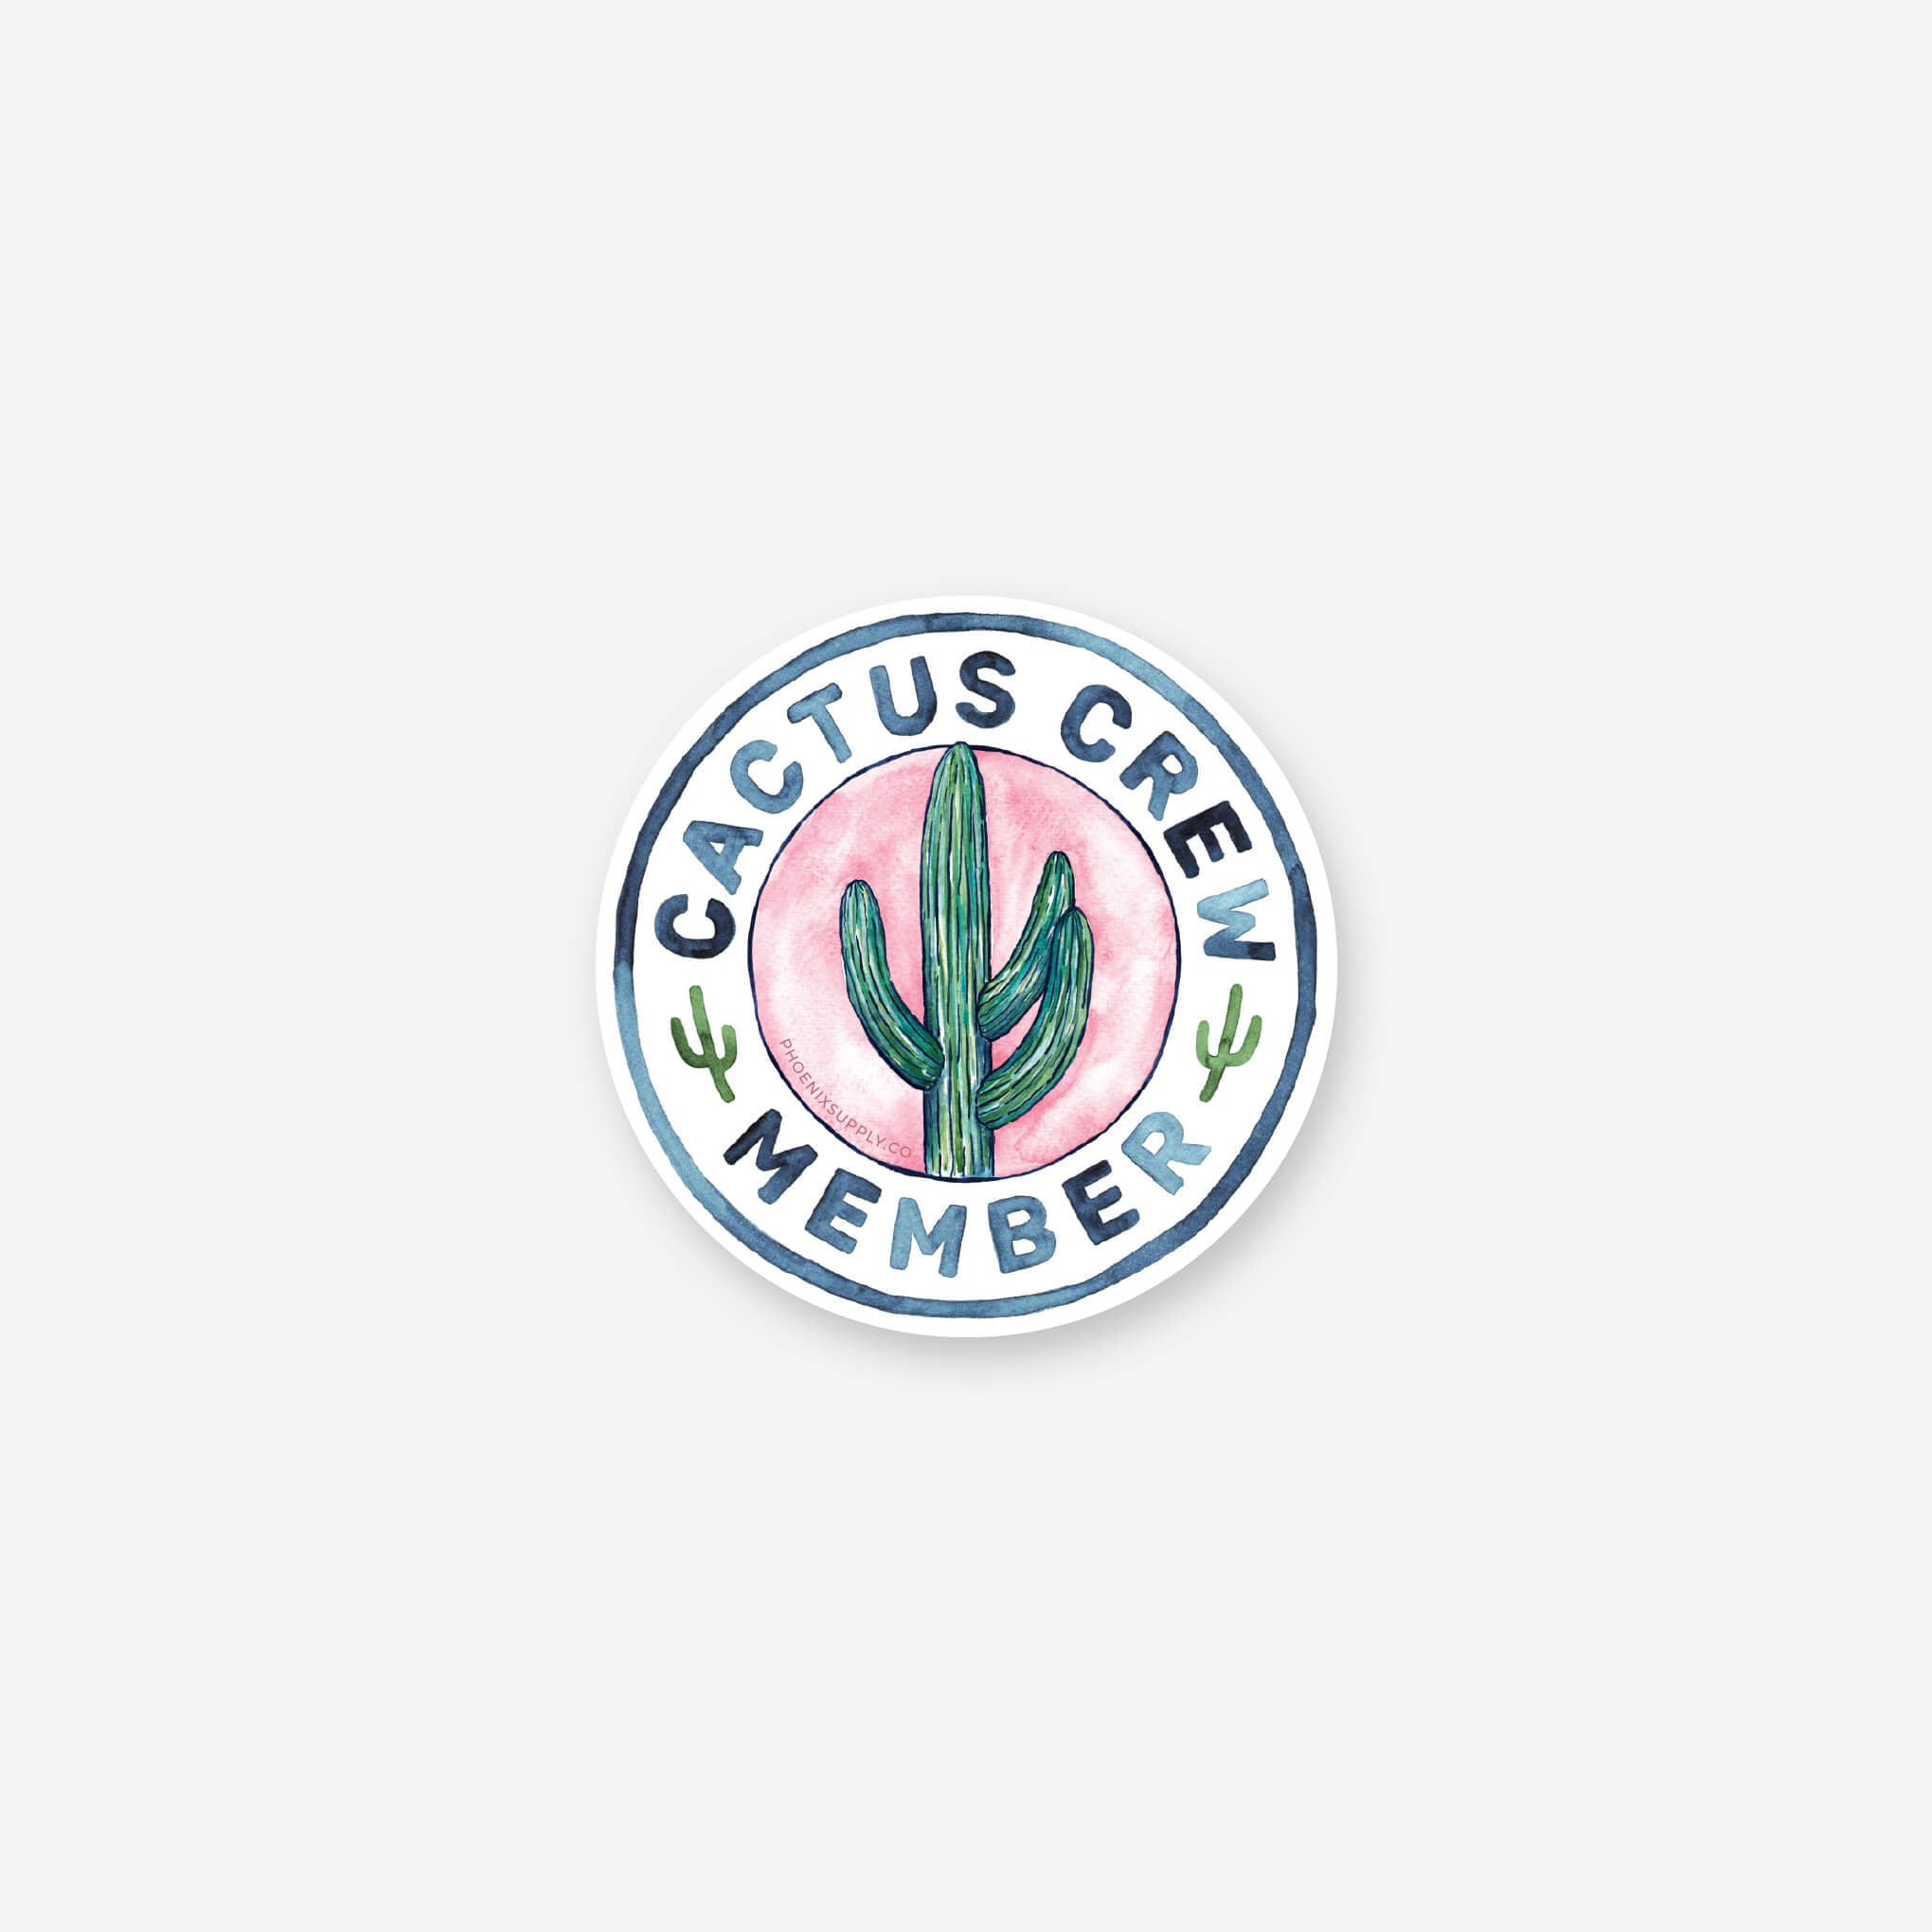 Cactus Crew Vinyl Sticker